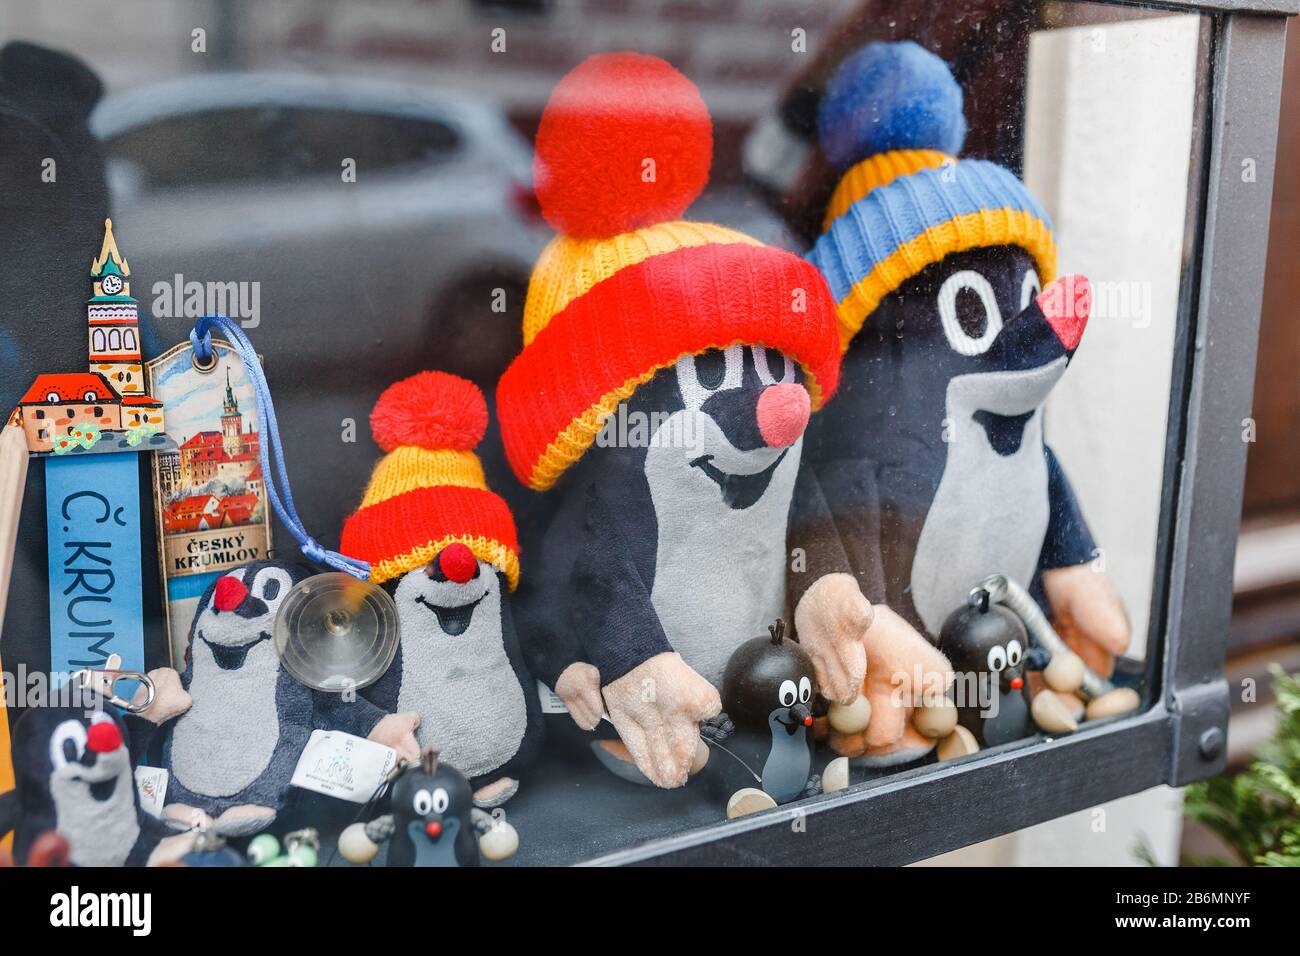 Dicembre 2017, CESKY KRUMLOV, REPUBBLICA CECA: È in vendita il famoso personaggio dei cartoni animati ceco Ktek mole in un negozio di souvenir Foto Stock